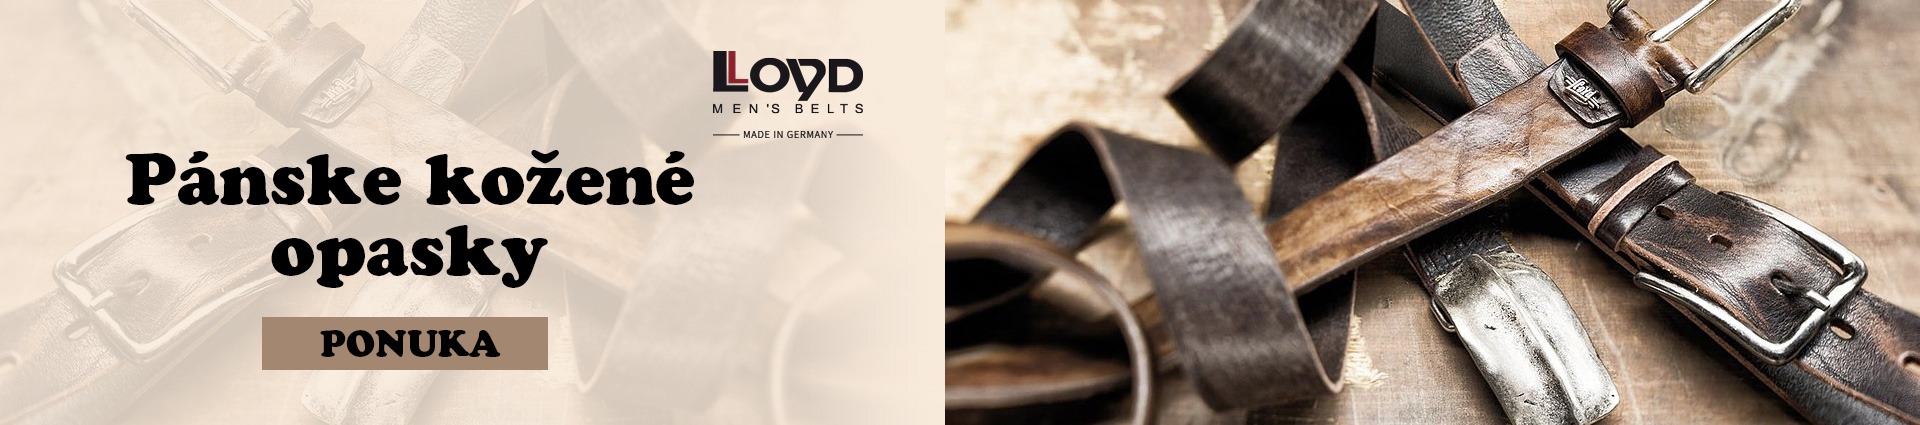 Pánske kožené opasky Lloyd Belts